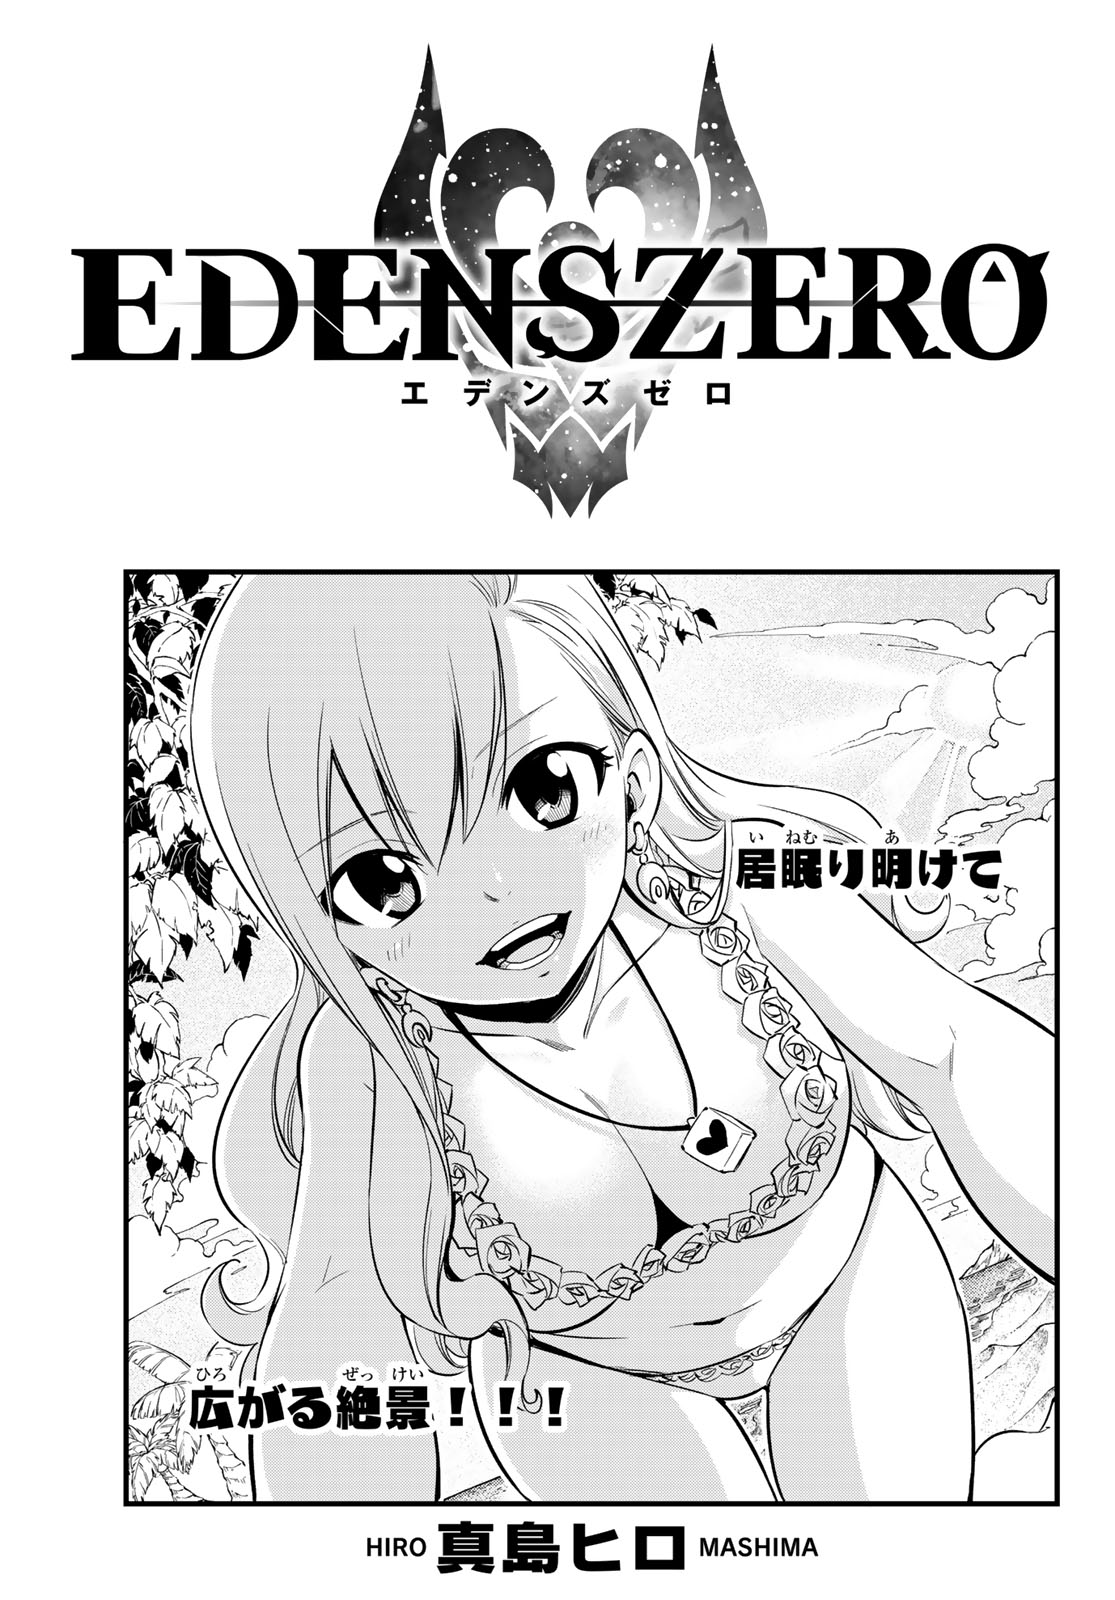 Edens Zero News - Chapter 130 New Manga Characters 